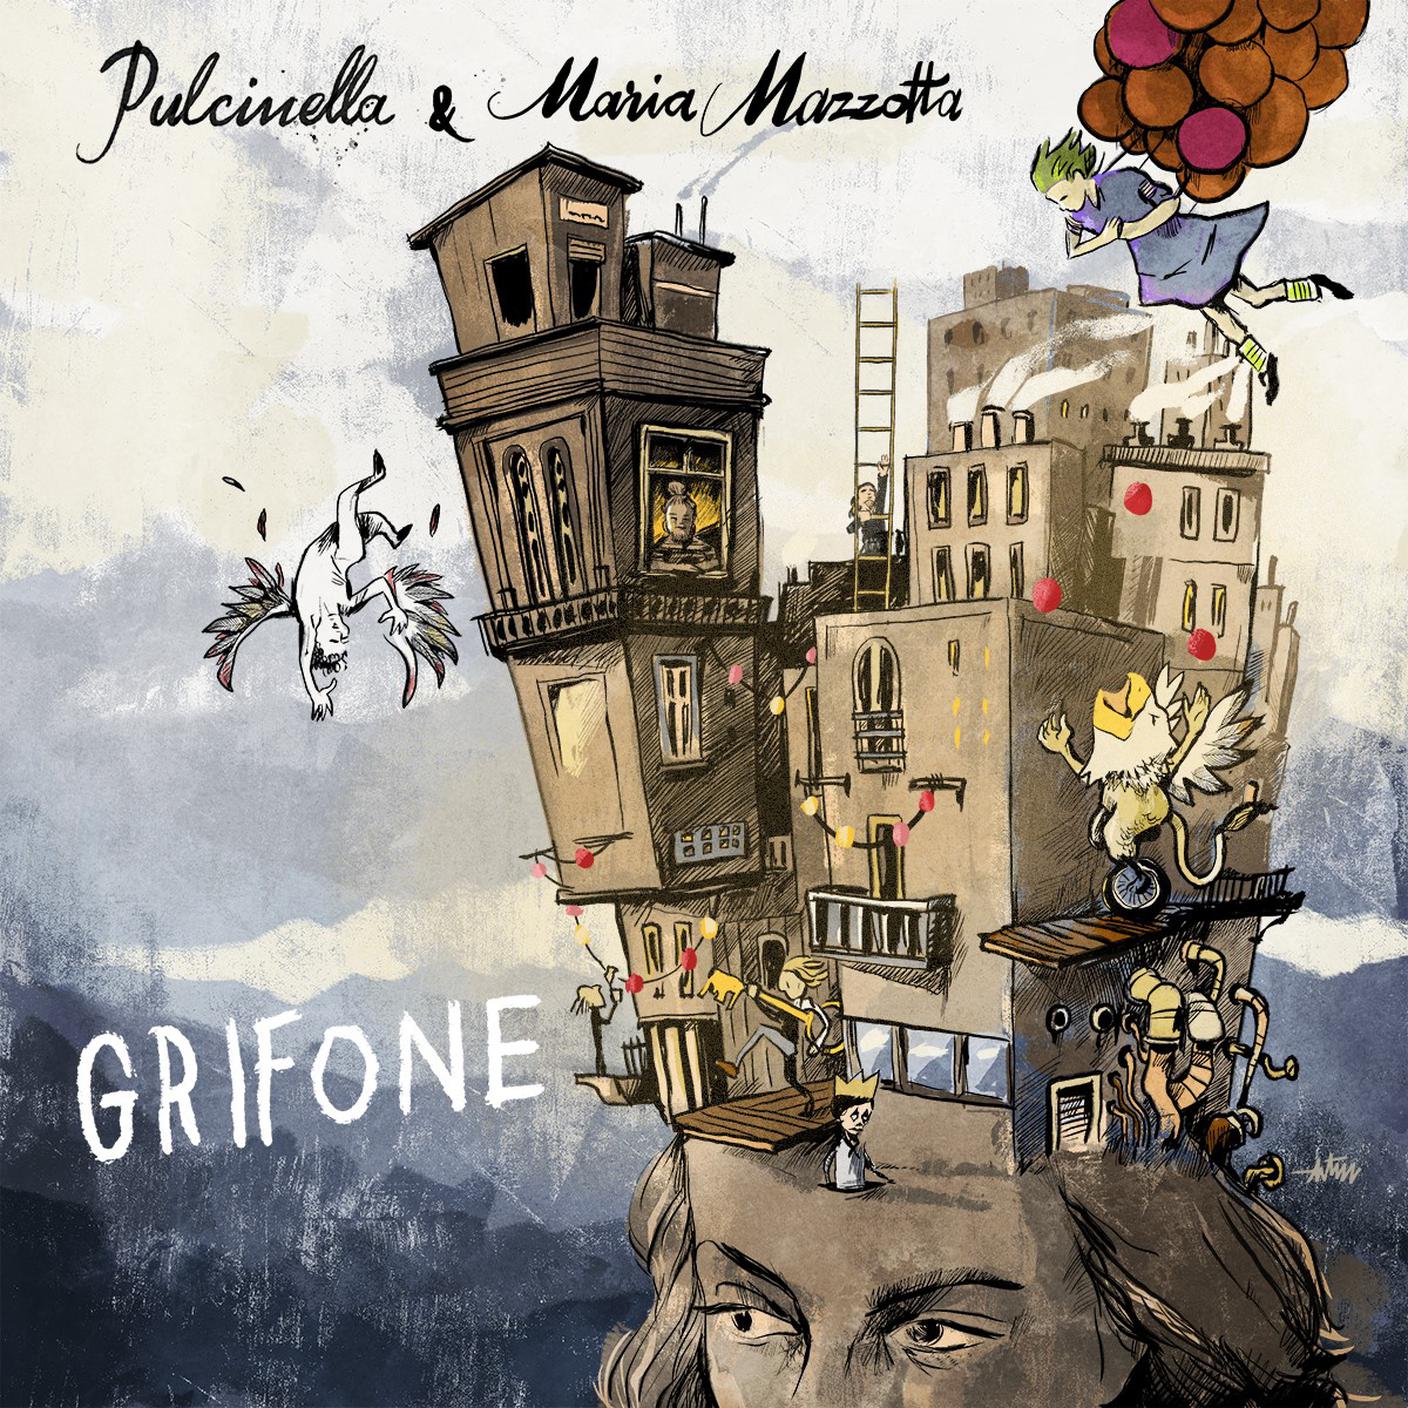 "Grifone" di Pulcinella e Maria Mazzotta, artist release (dettaglio di copertina)